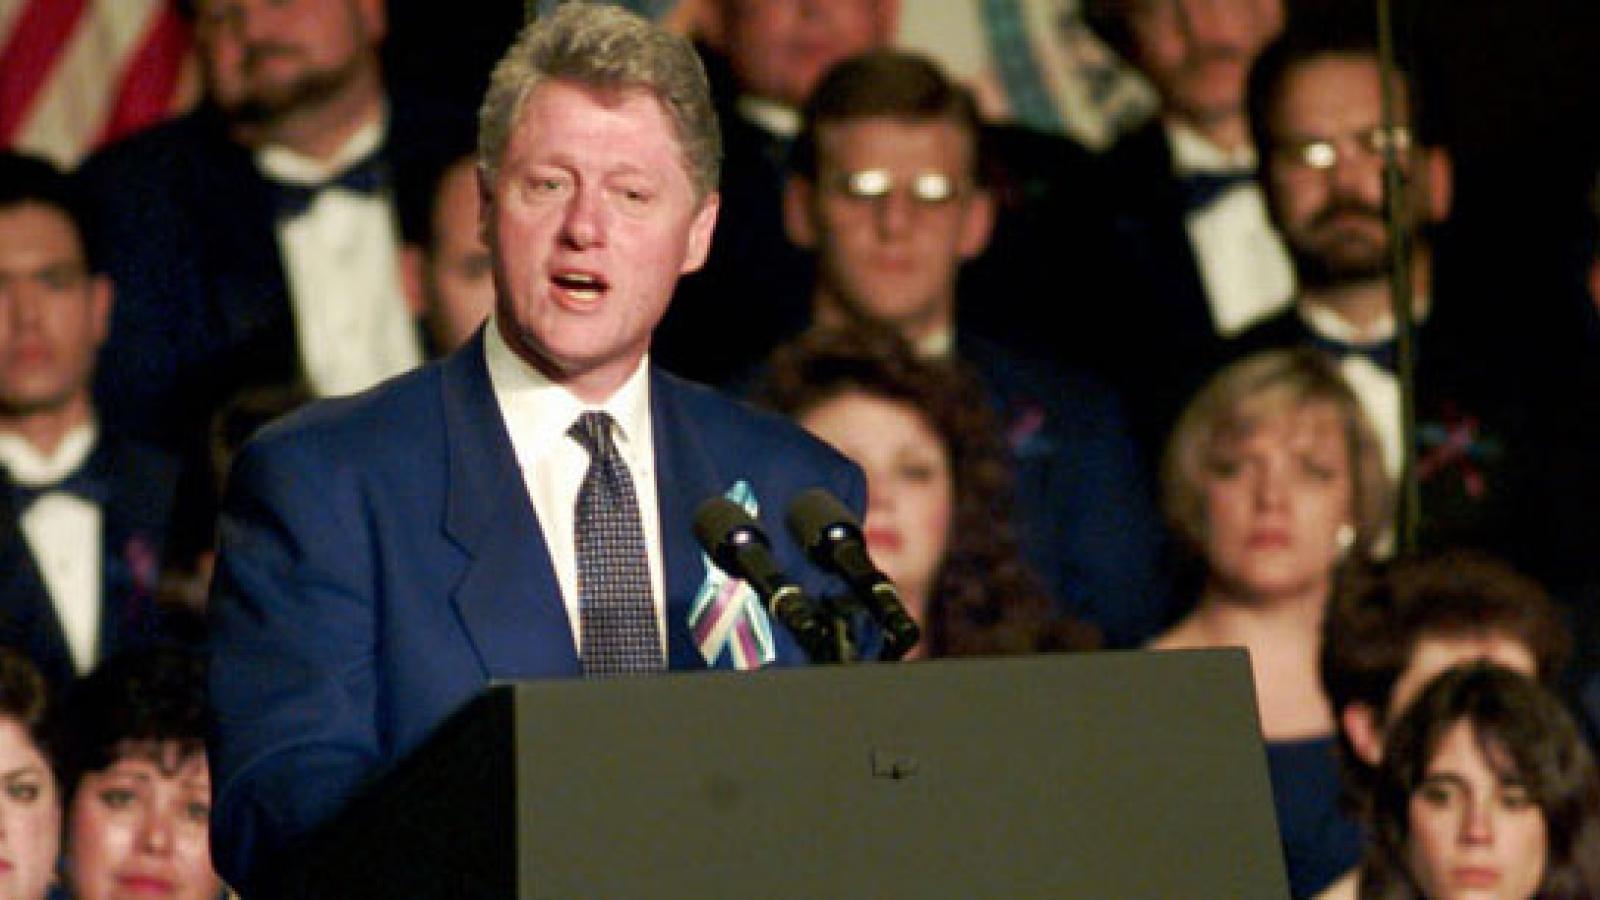 Clinton's speech in Oklahoma City